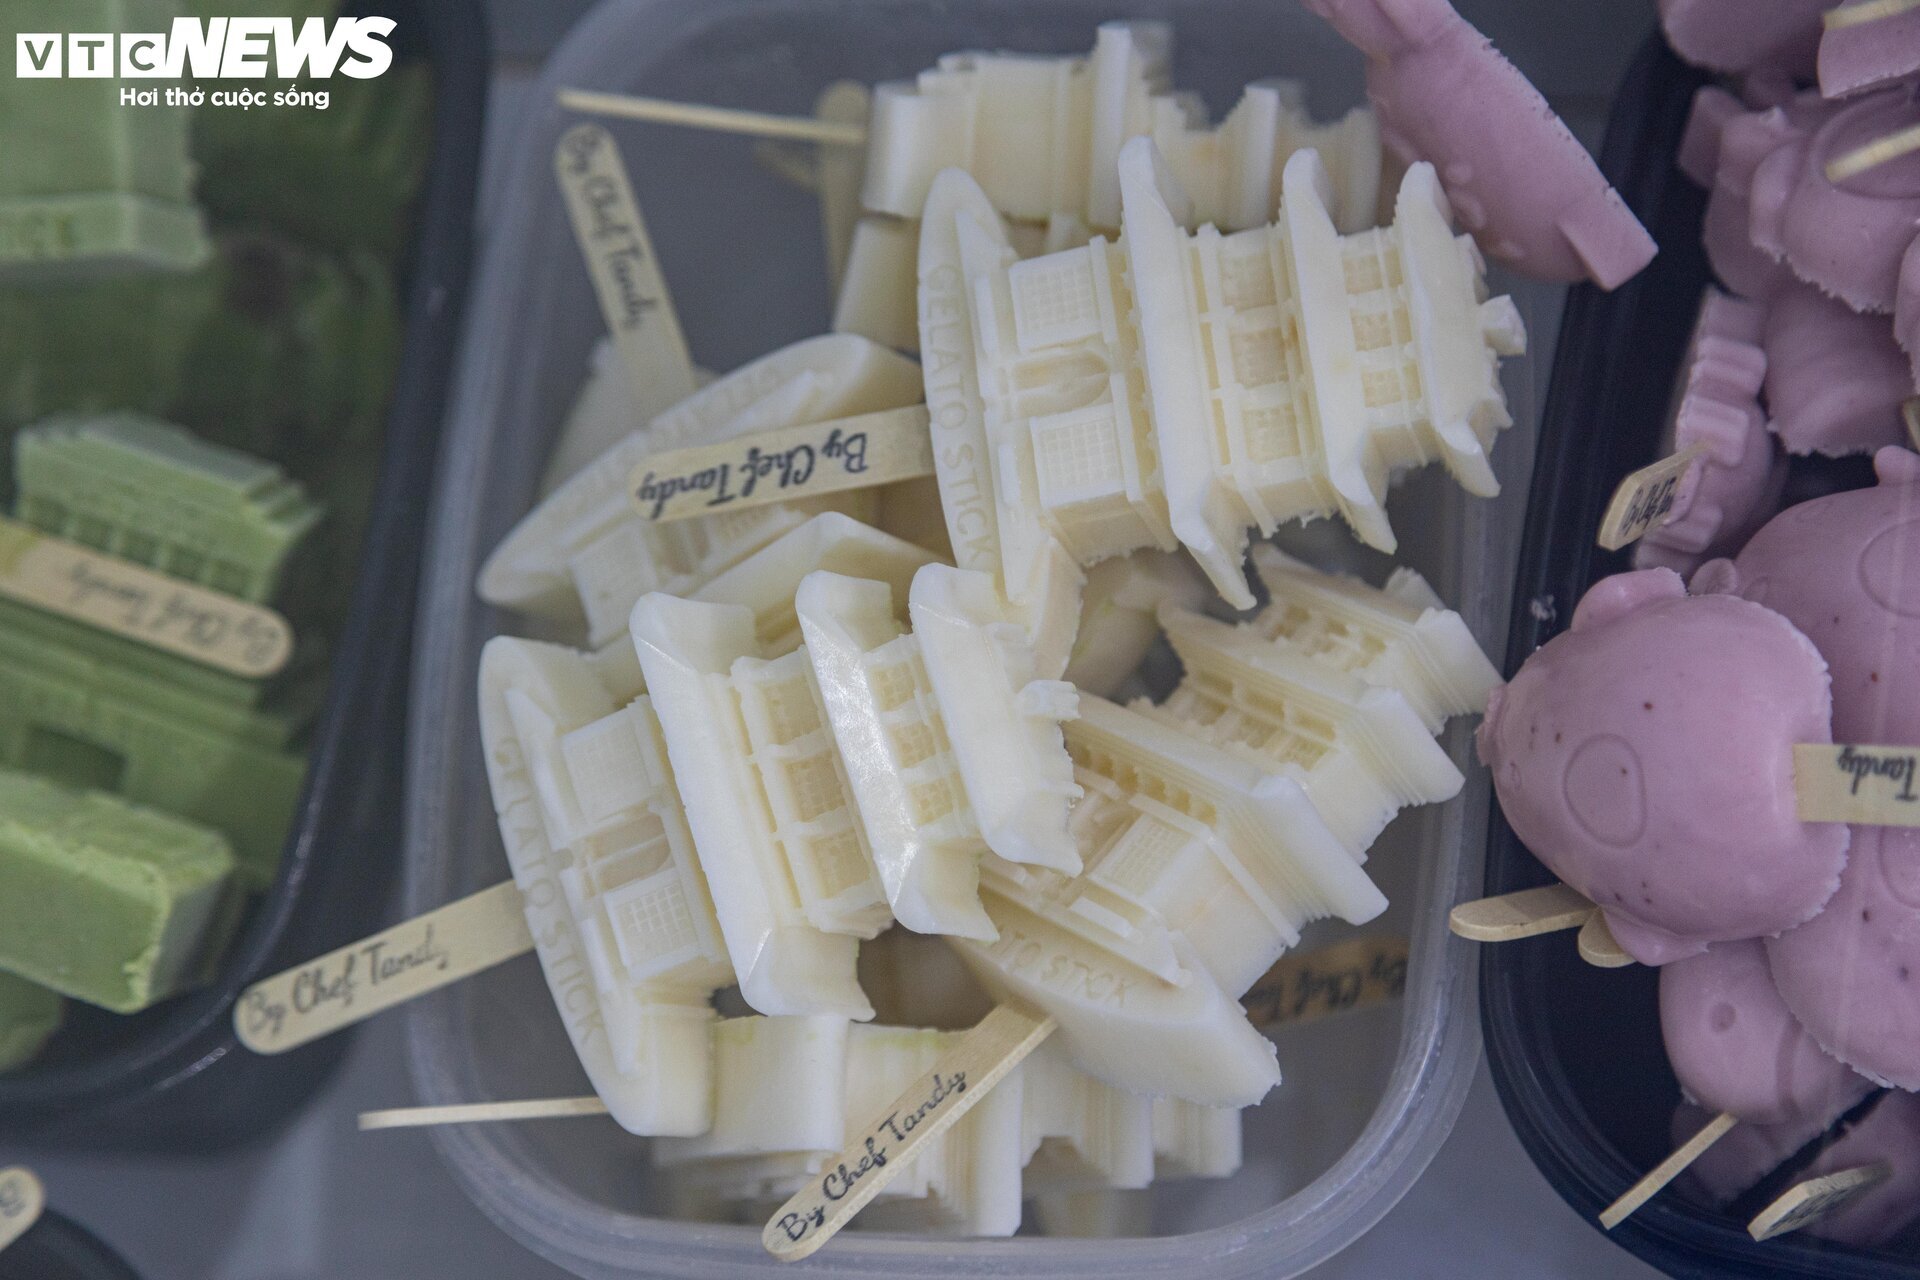 Cận cảnh quy trình làm kem 3D tạo hình 11 địa danh nổi tiếng ở Hà Nội - Ảnh 1.